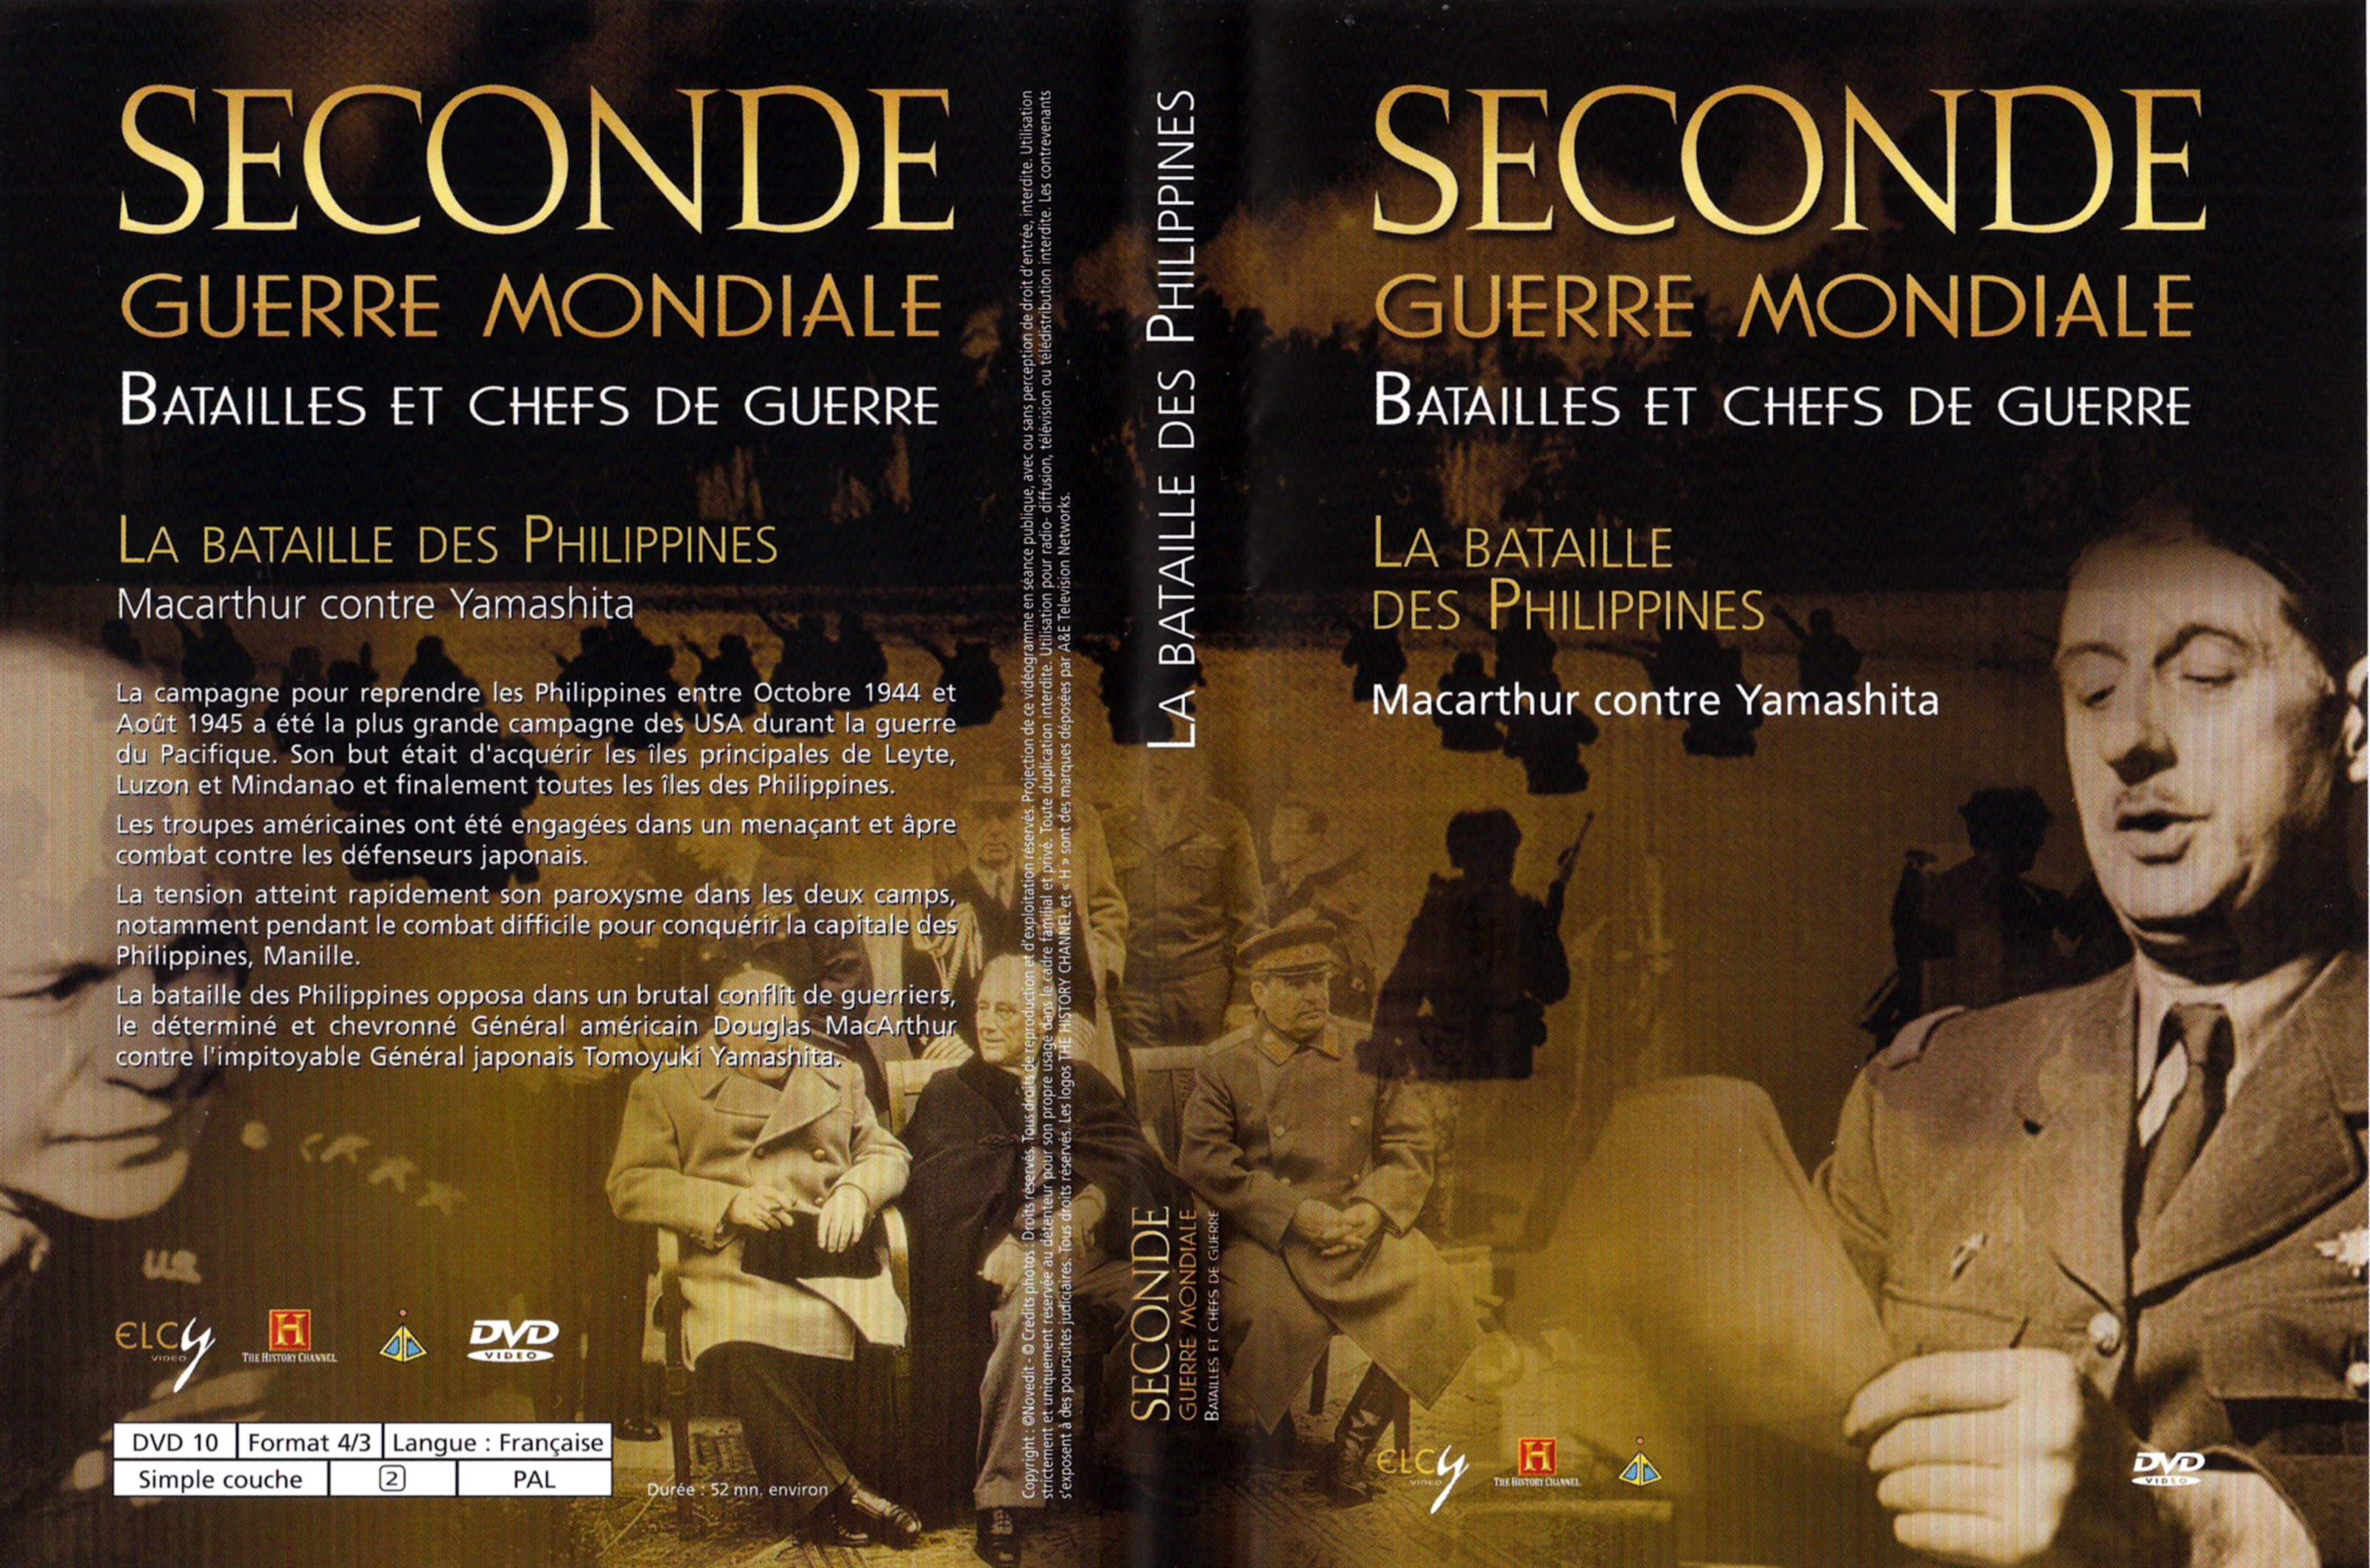 Jaquette DVD Seconde guerre mondiale batailles et chefs de guerre - La bataille des philippines